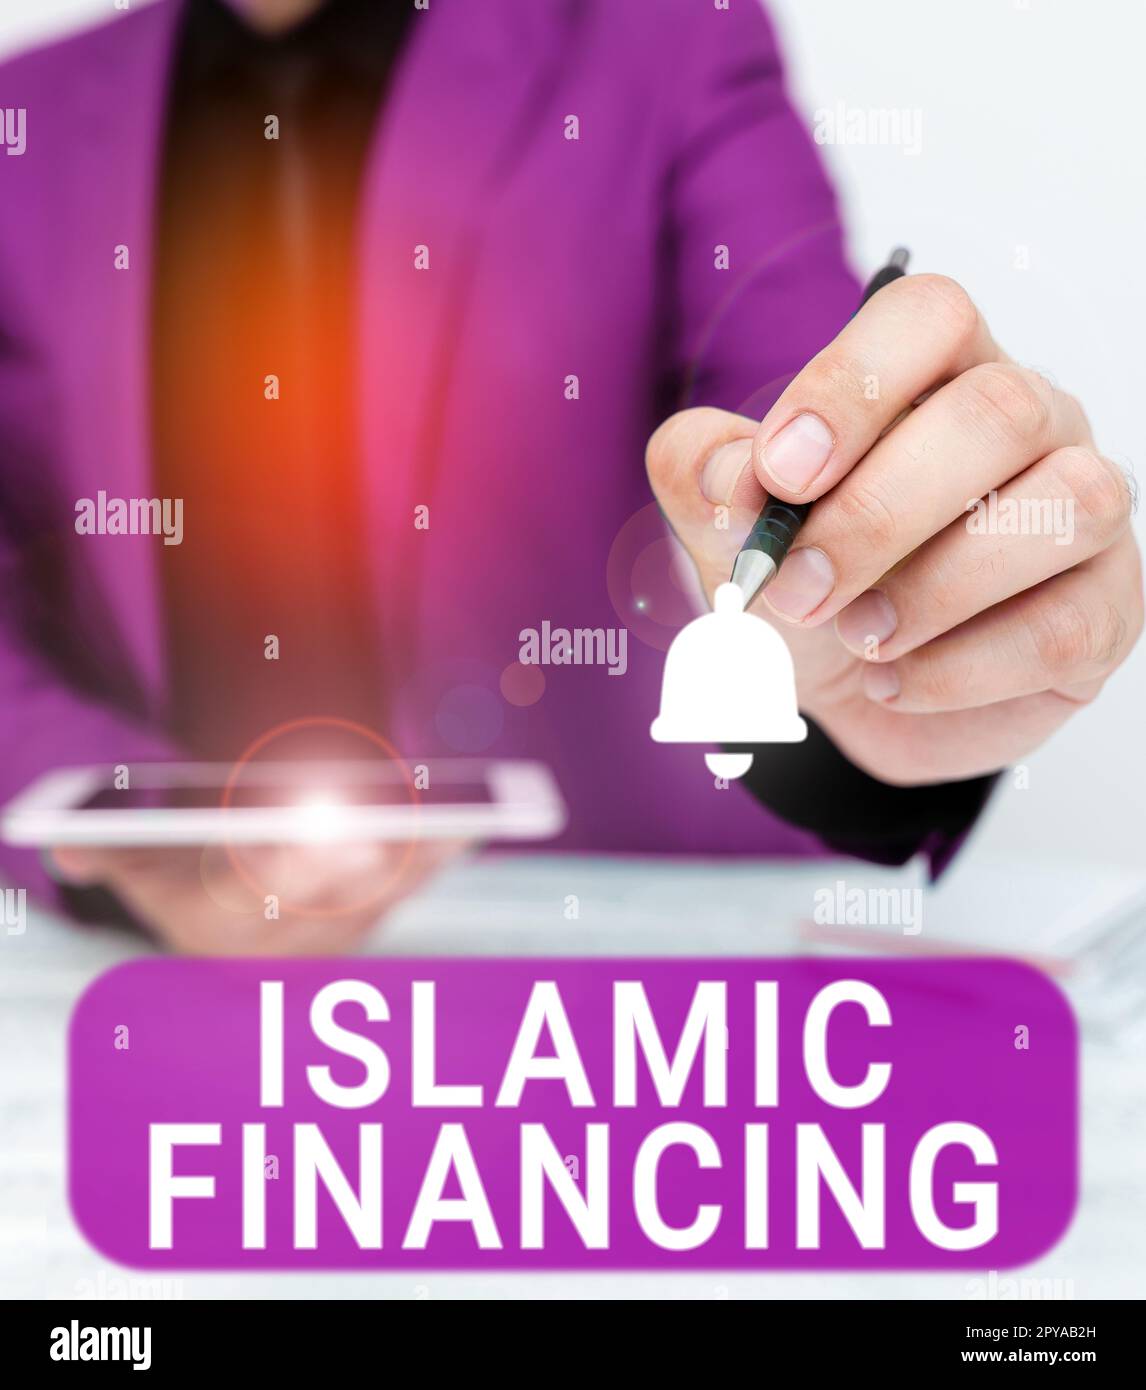 Textzeichen mit islamischer Finanzierung. Geschäftskonzept Bankaktivitäten und Investitionen, die der Scharia entsprechen Stockfoto